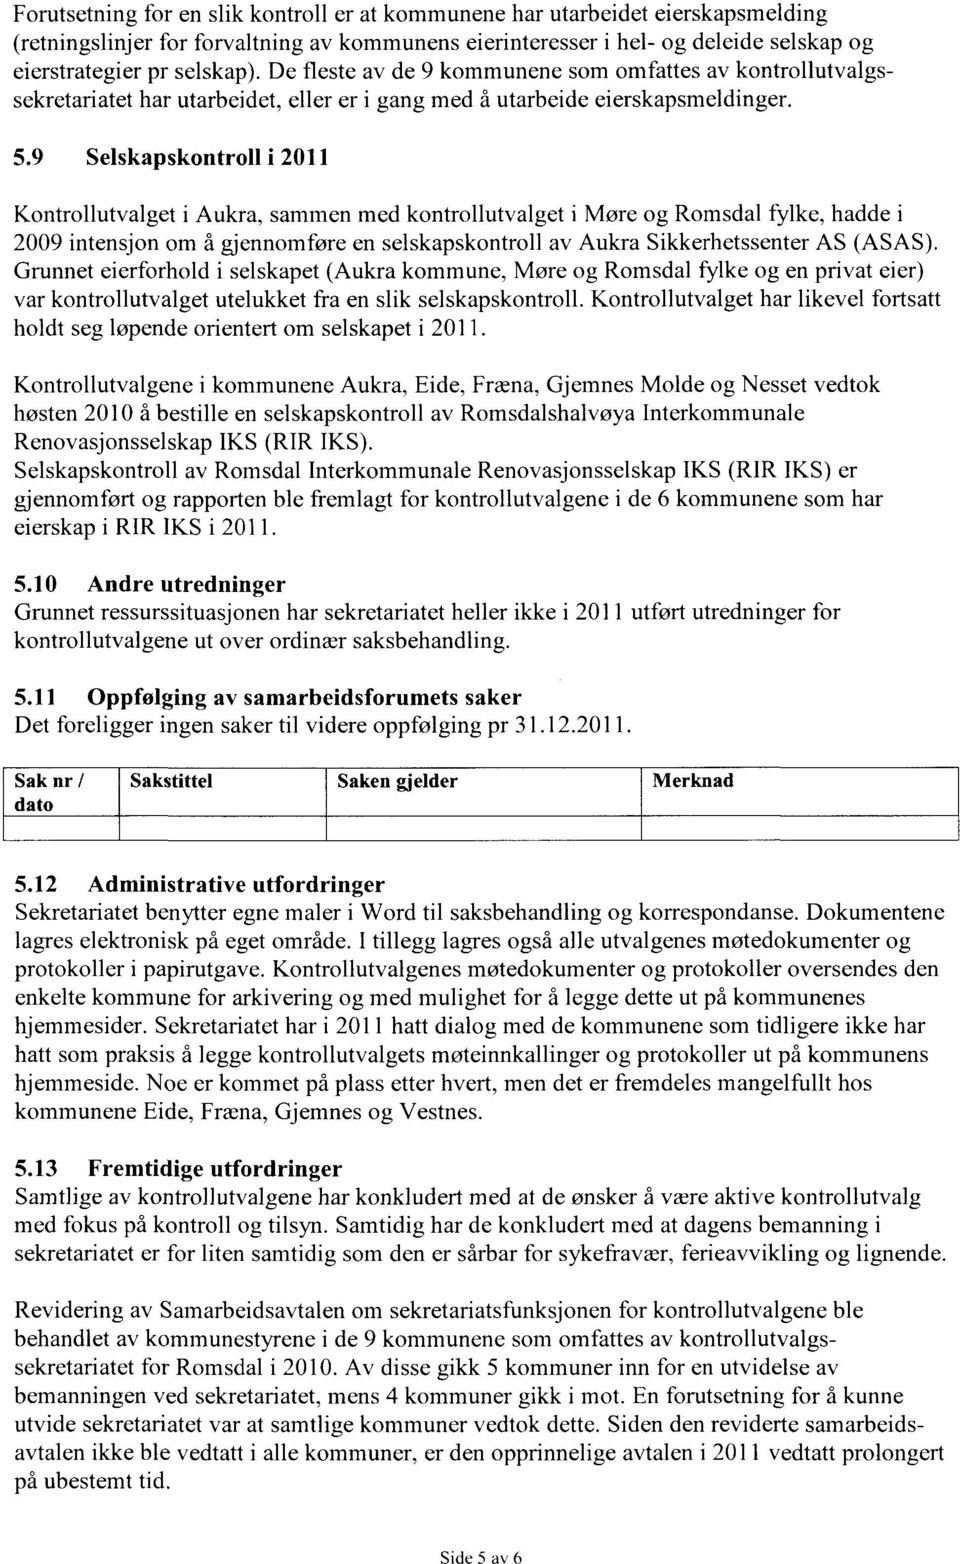 9 Selskapskontroll i 2011 Kontrollutvalget i Aukra, sammen med kontrollutvalget i Møre og Romsdal fylke, hadde i 2009 intensjon om å gjennomføre en selskapskontroll av Aukra Sikkerhetssenter AS